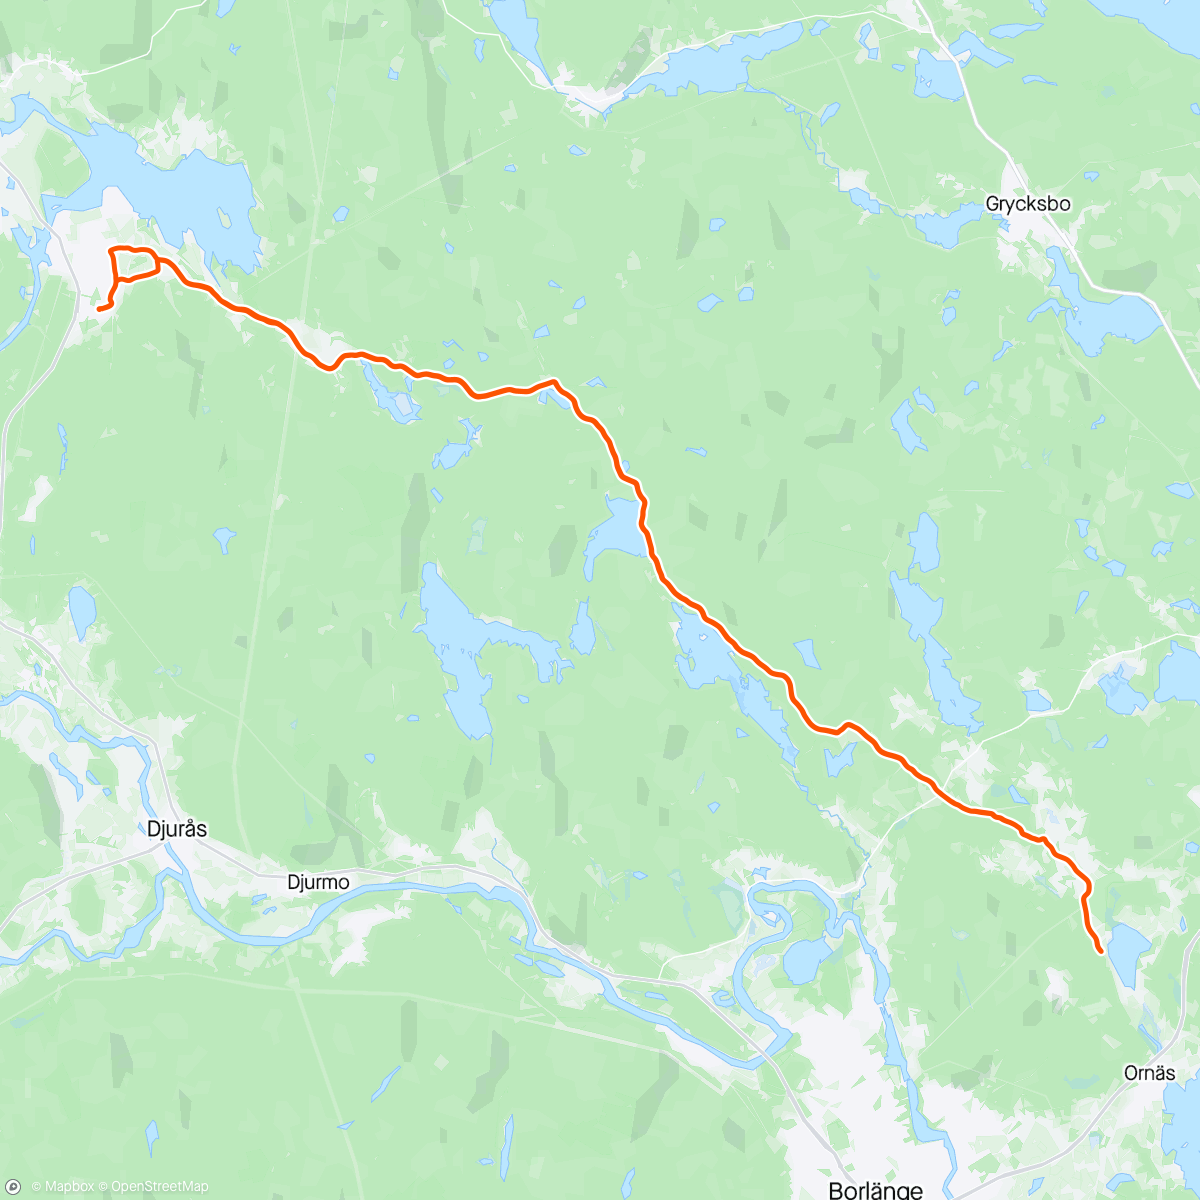 「Möta Fabian som cyklar från Stockholm 🌞🌞」活動的地圖